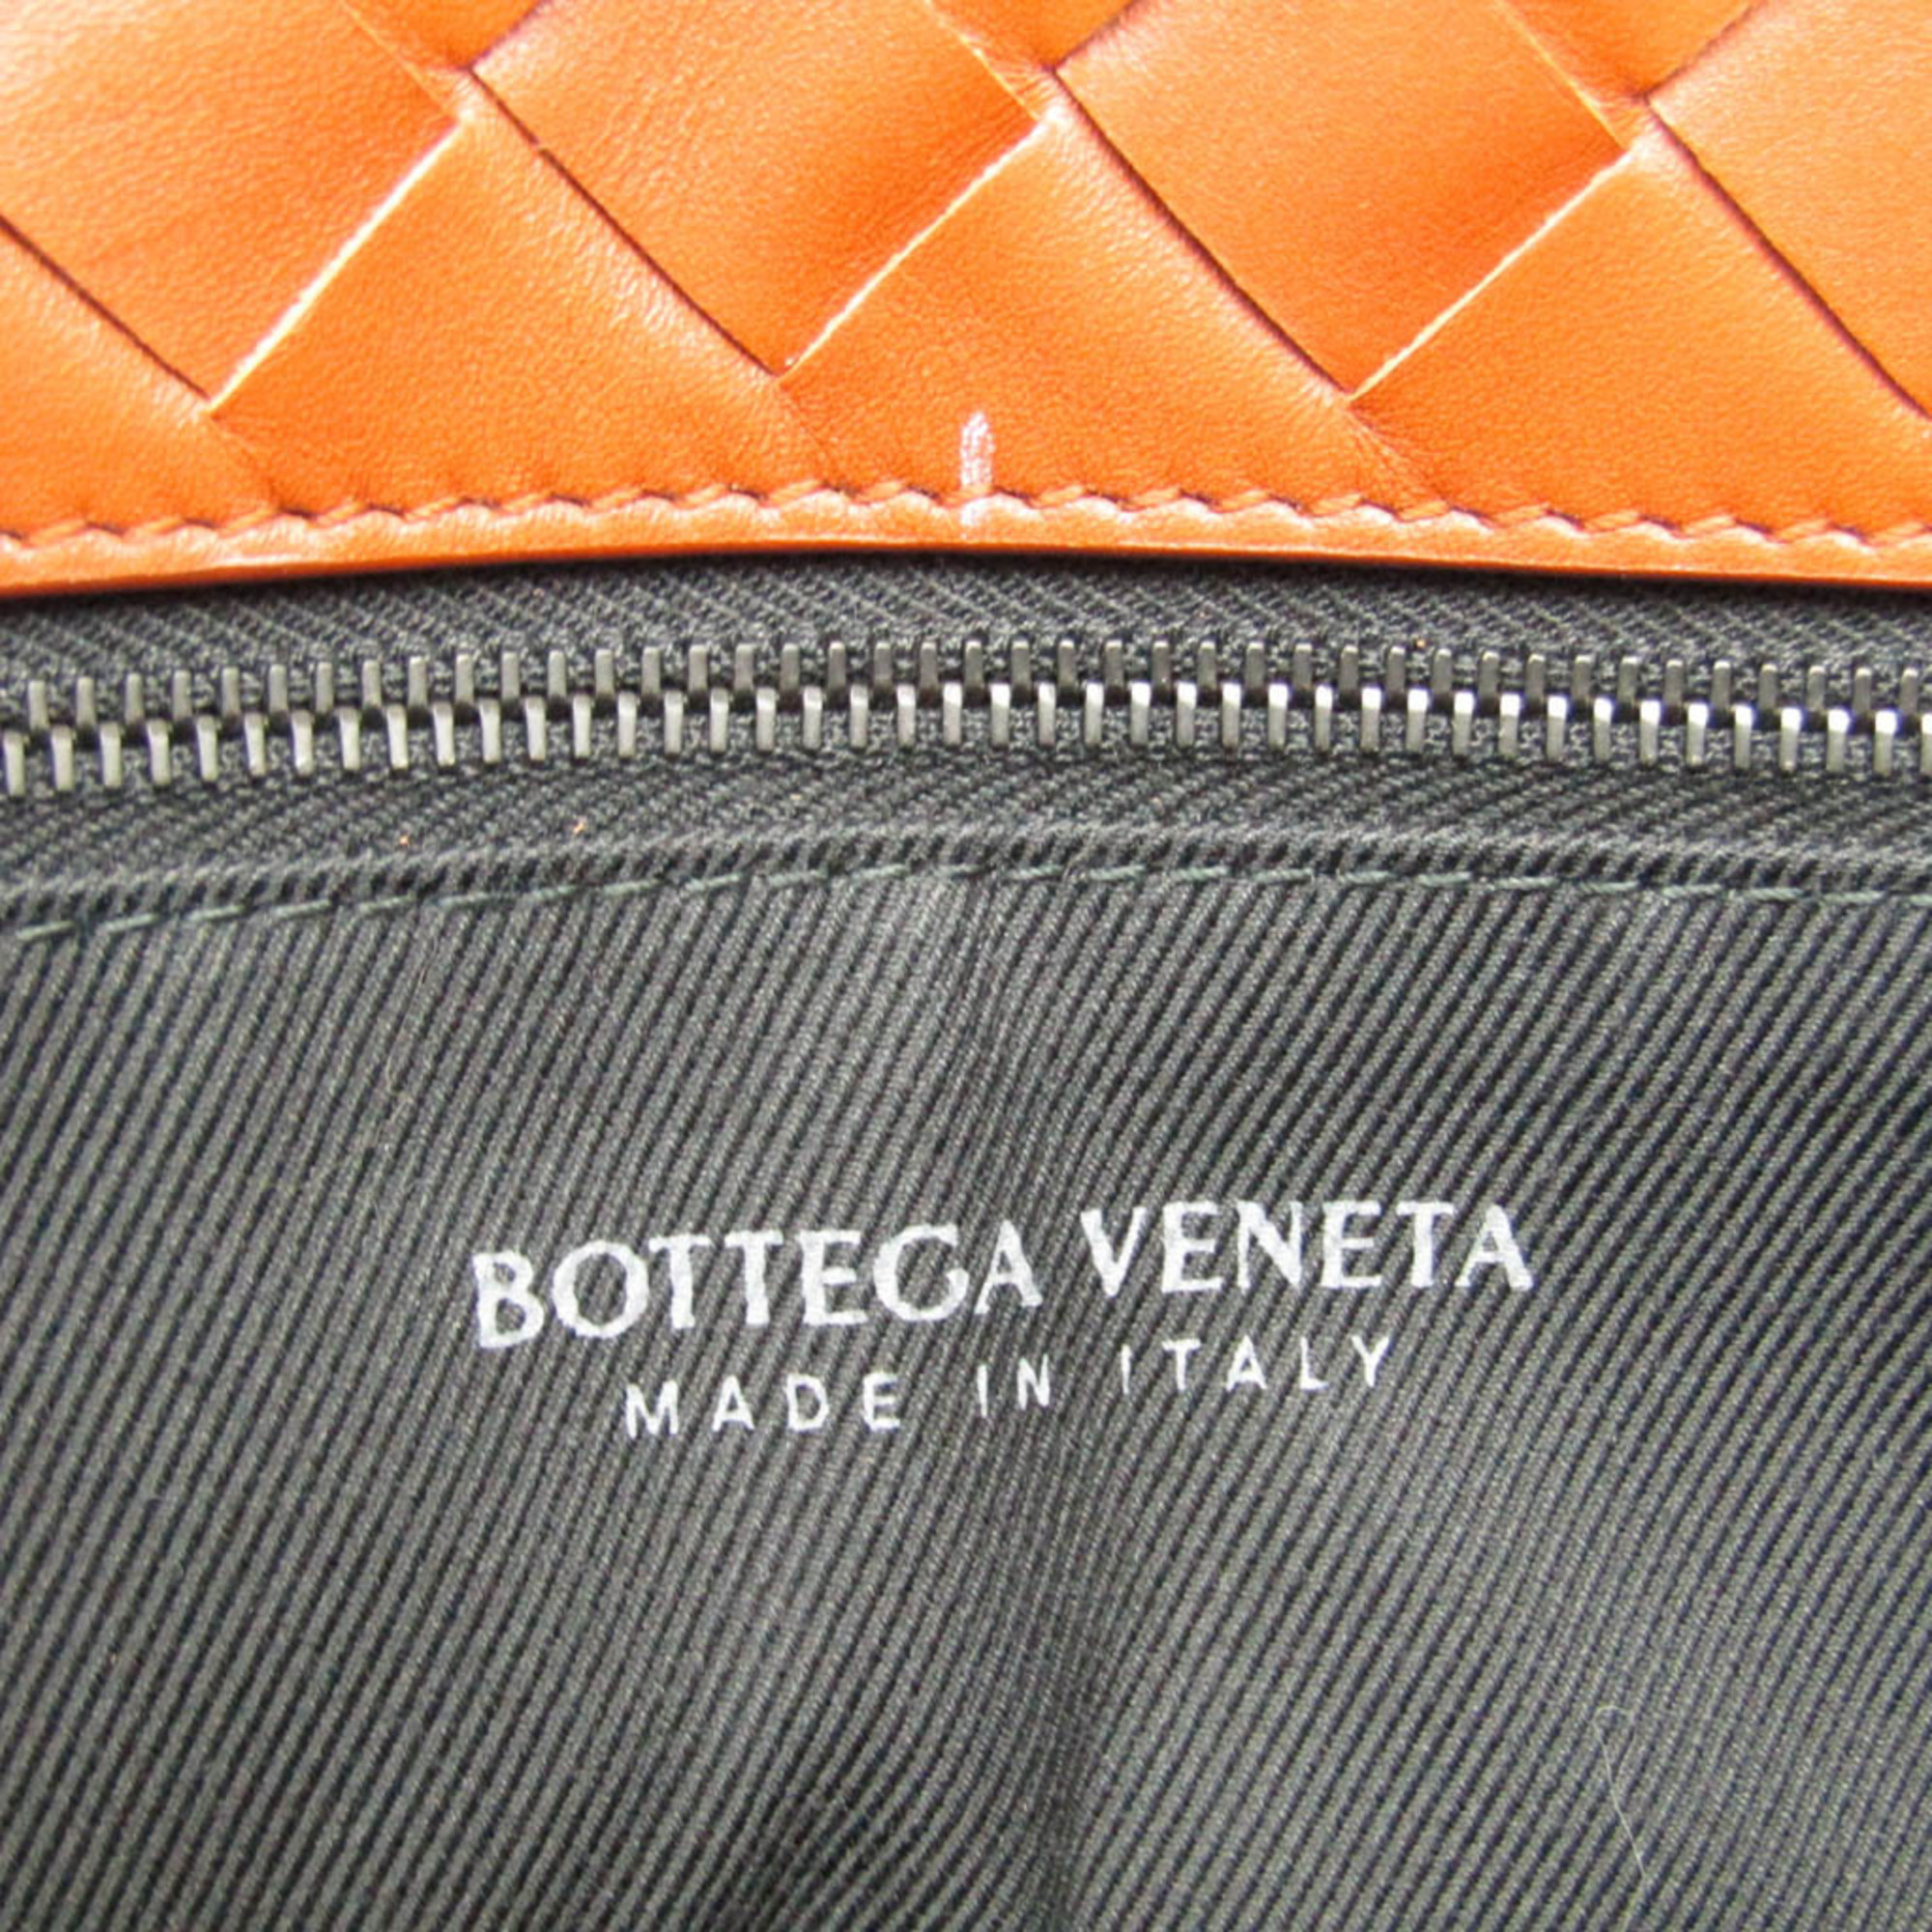 ボッテガ・ヴェネタ(Bottega Veneta) イントレチャート メンズ,レディース レザー トートバッグ レッドブラウン